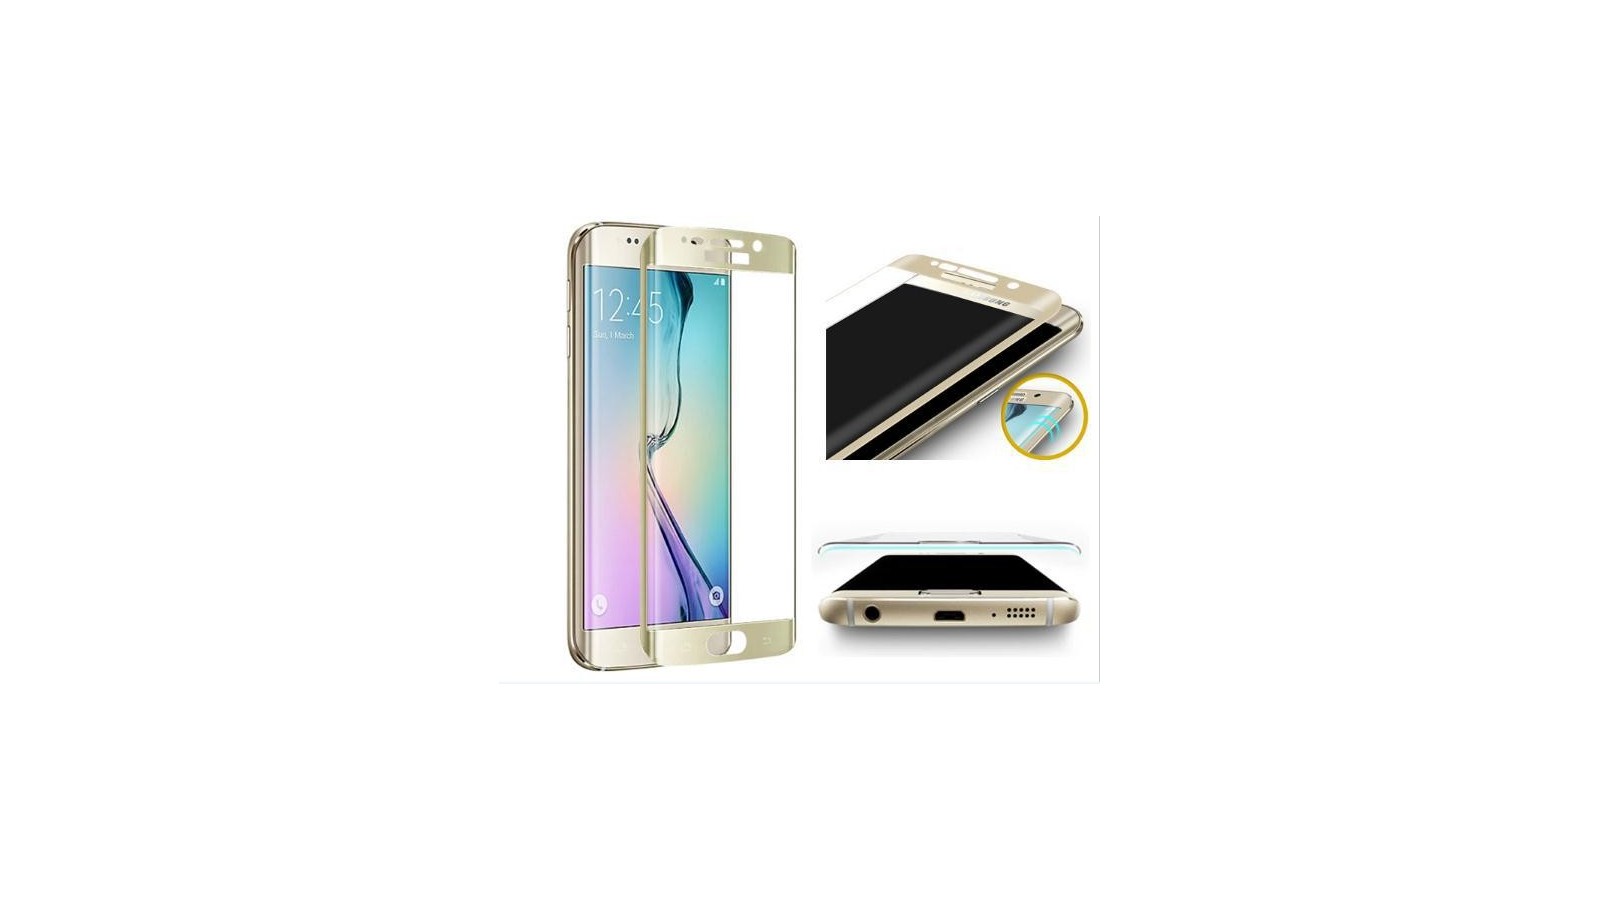 Pellicola colore oro curva in vetro temperato per Samsung Galaxy S6 Edge